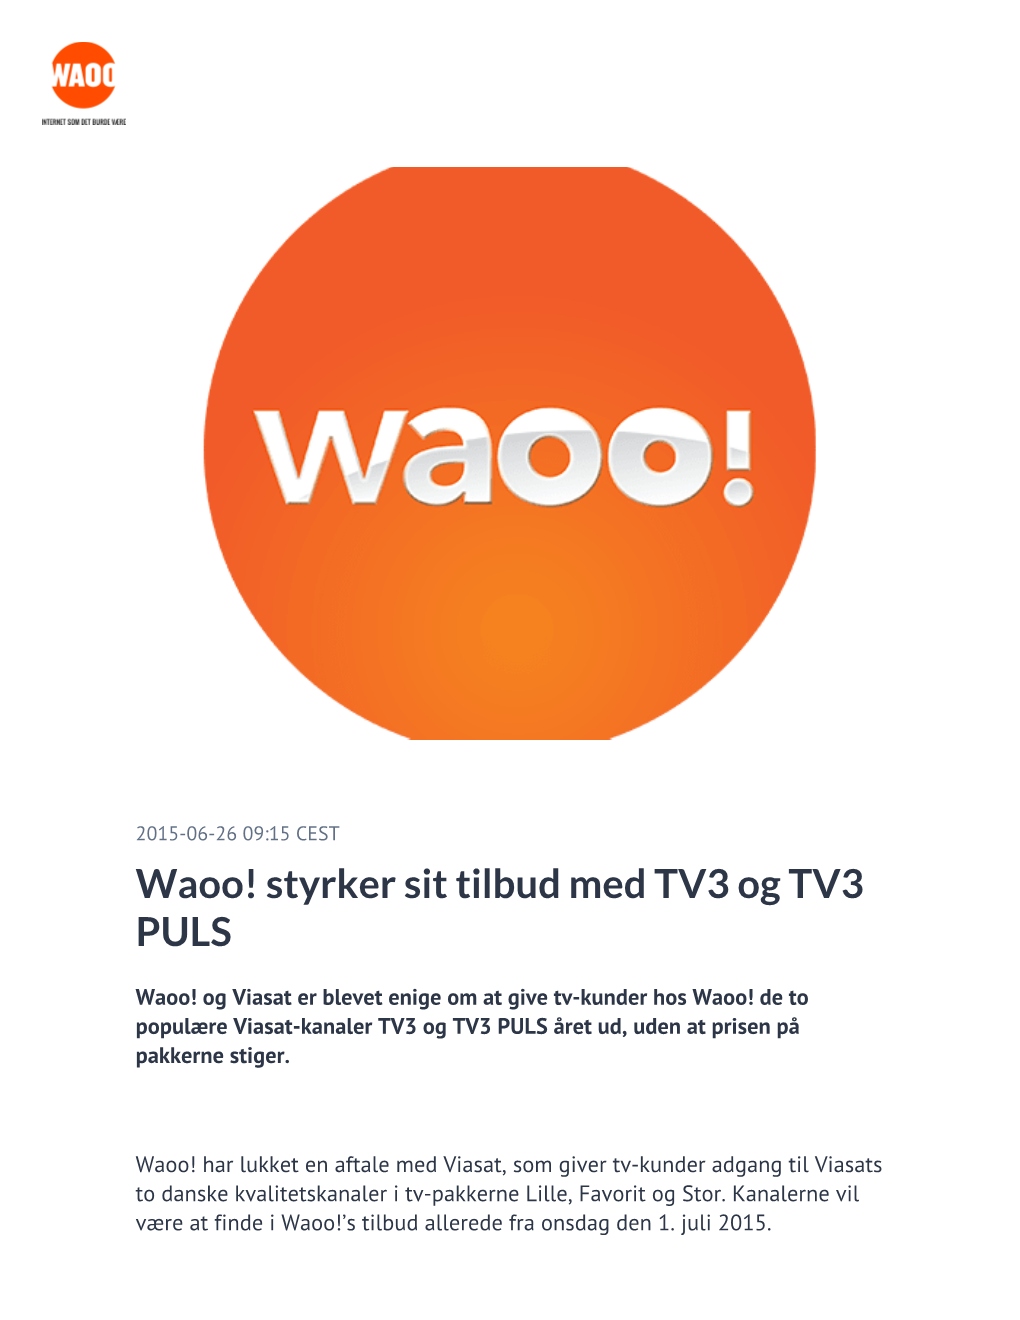 Waoo! Styrker Sit Tilbud Med TV3 Og TV3 PULS